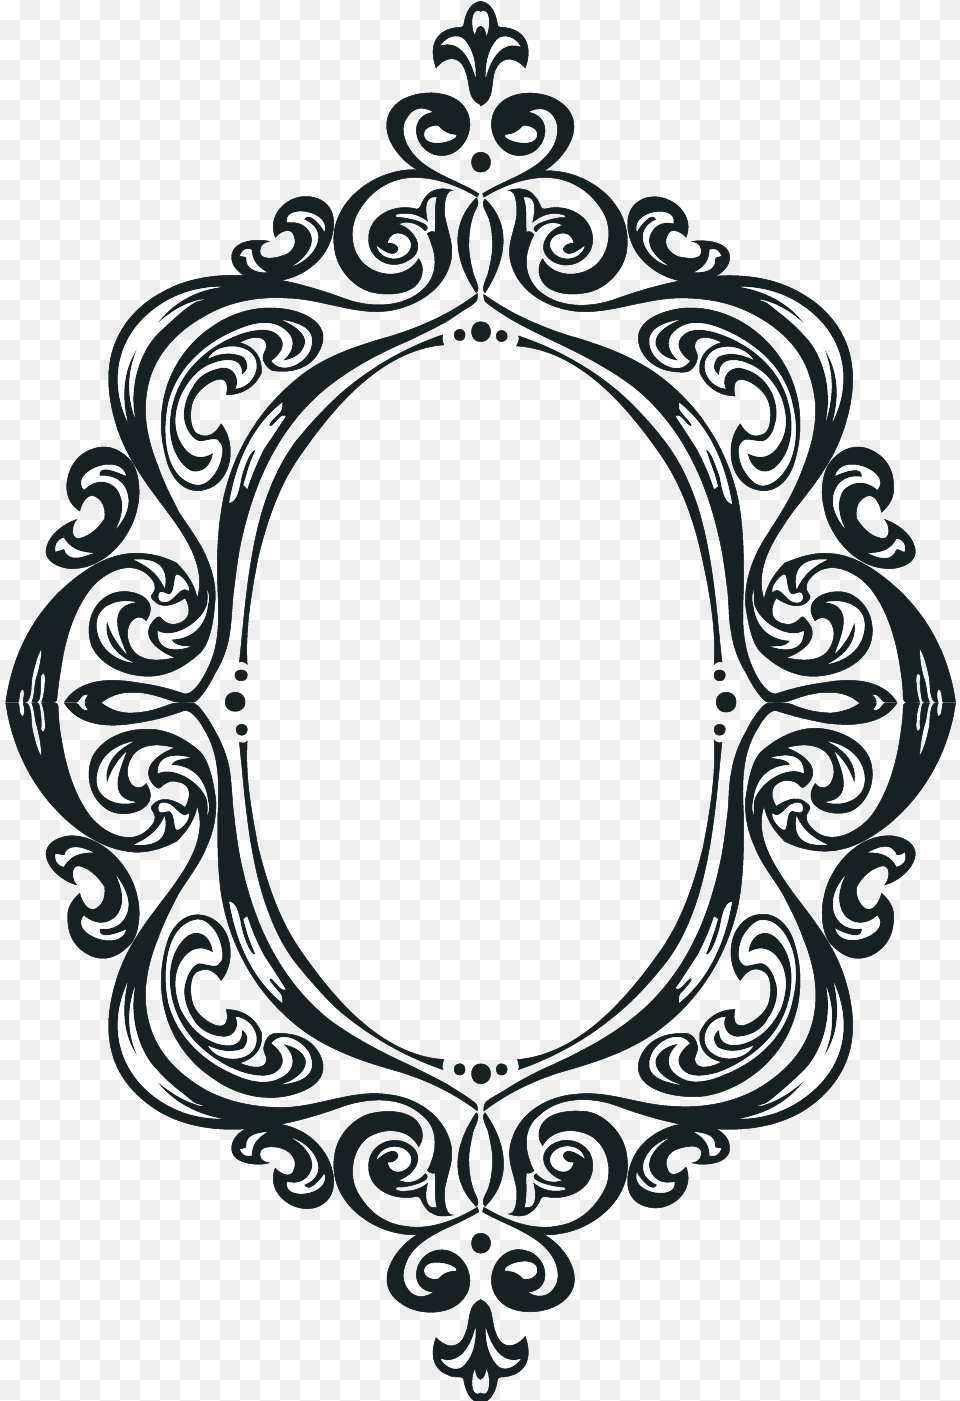 Moldura De Espelho Oval Png Image